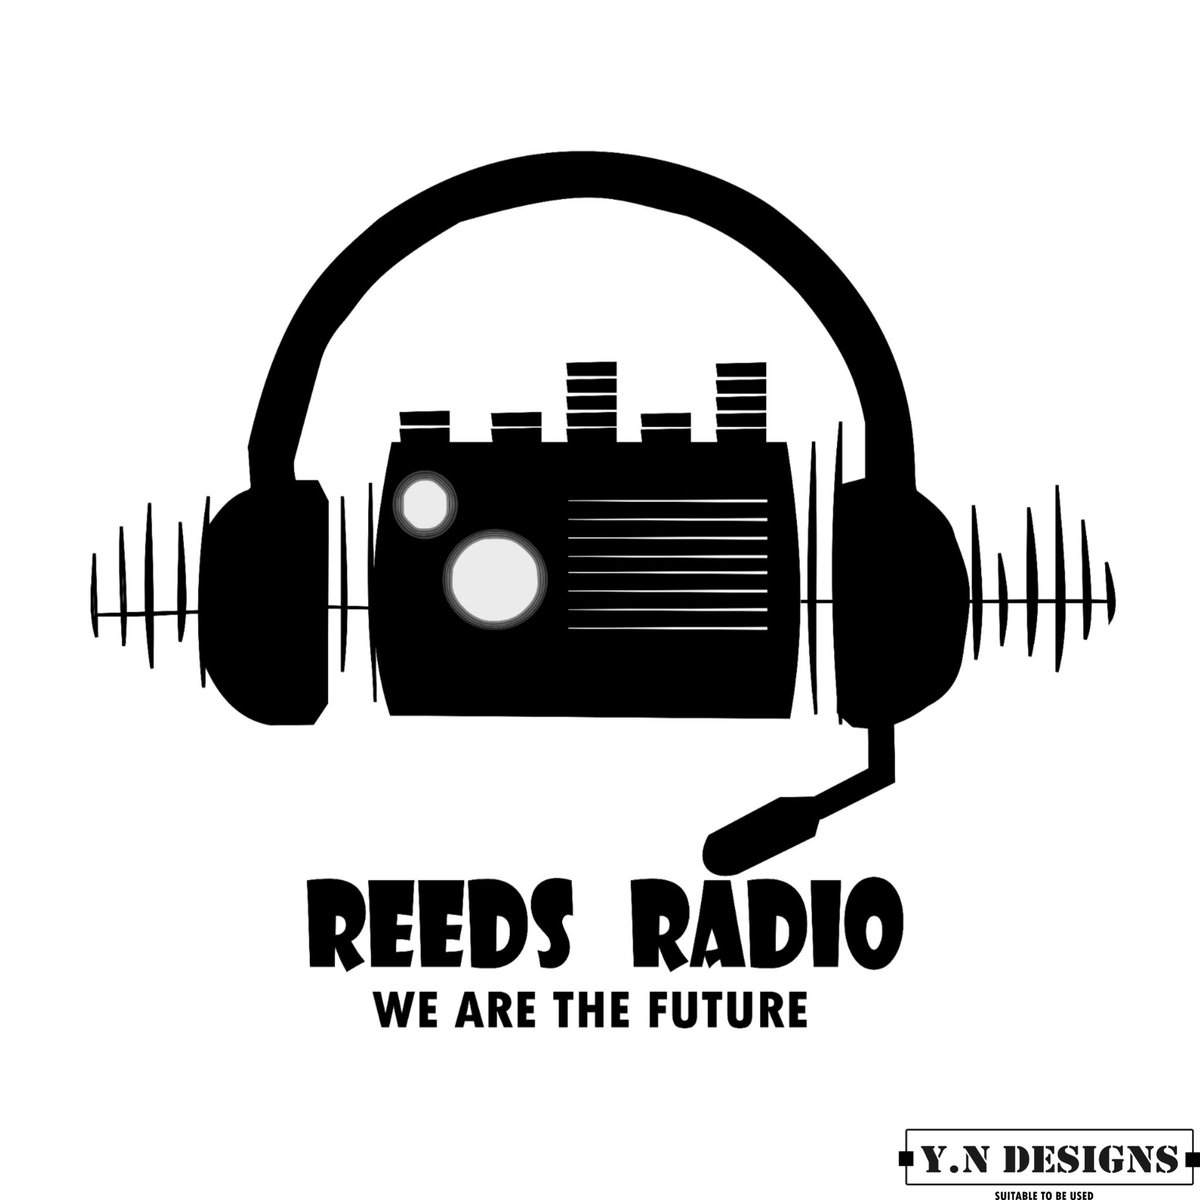 #ReedsRadio Logo #SuitableToBeUsed #YNDesigns